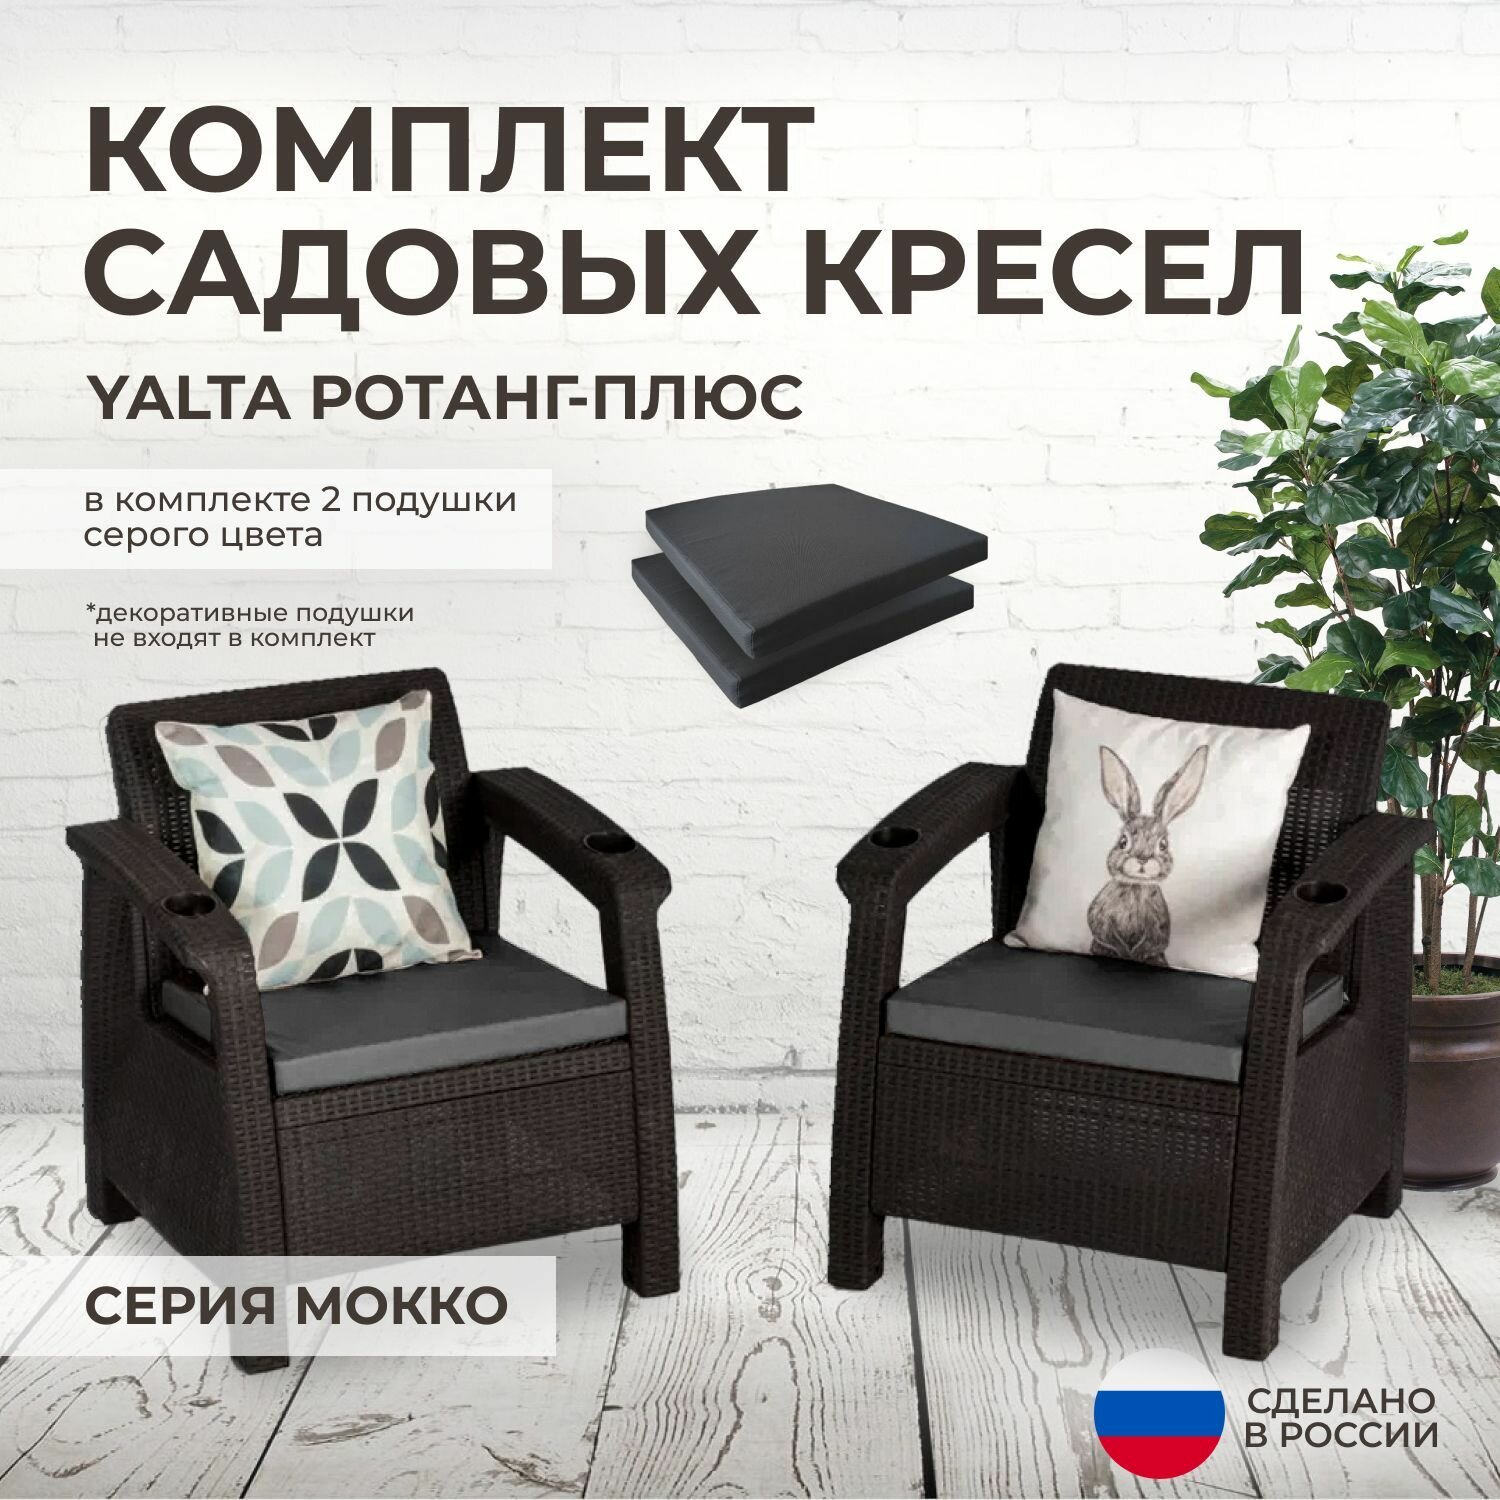 Кресла садовые 2шт. YALTA (Ялта Ротанг-плюс) + 2 серые подушки (искусственный ротанг (пластик)